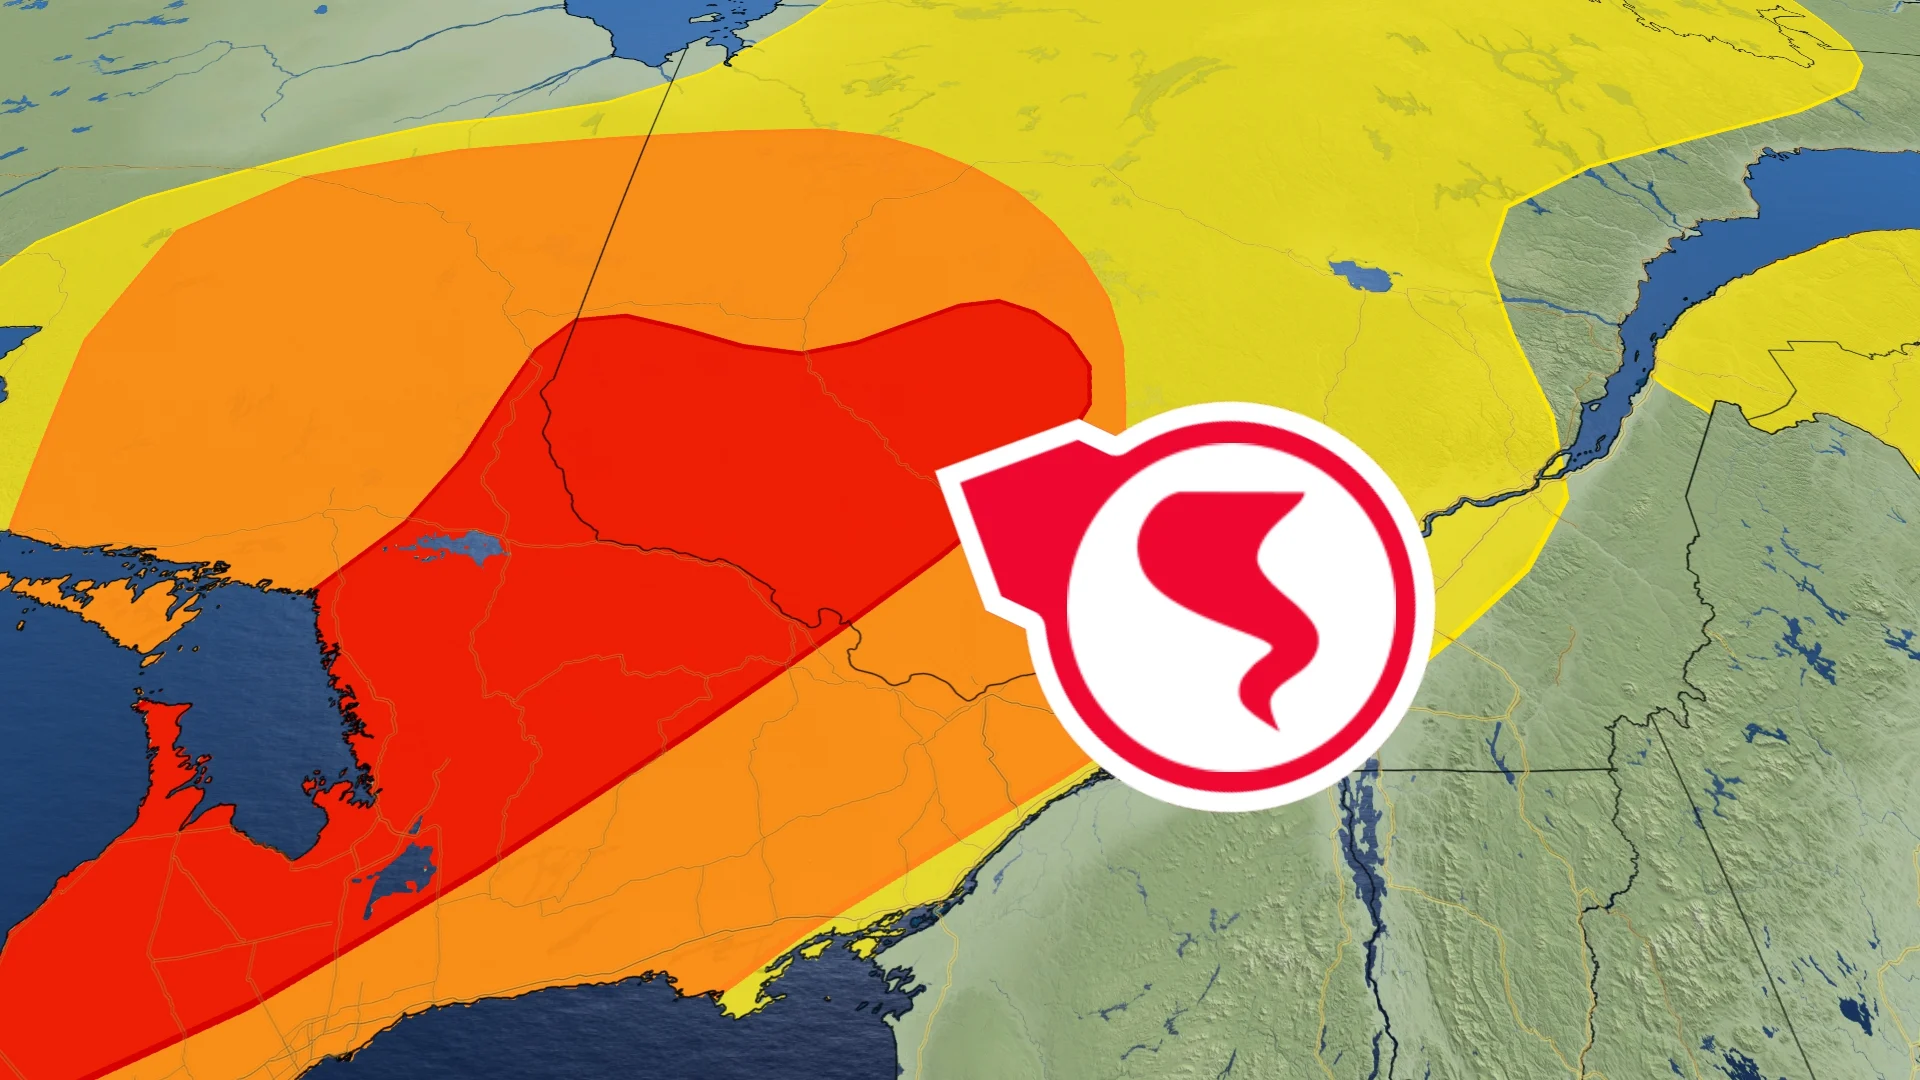 Orages violents : risque de tornade au Québec demain. Détails ici.